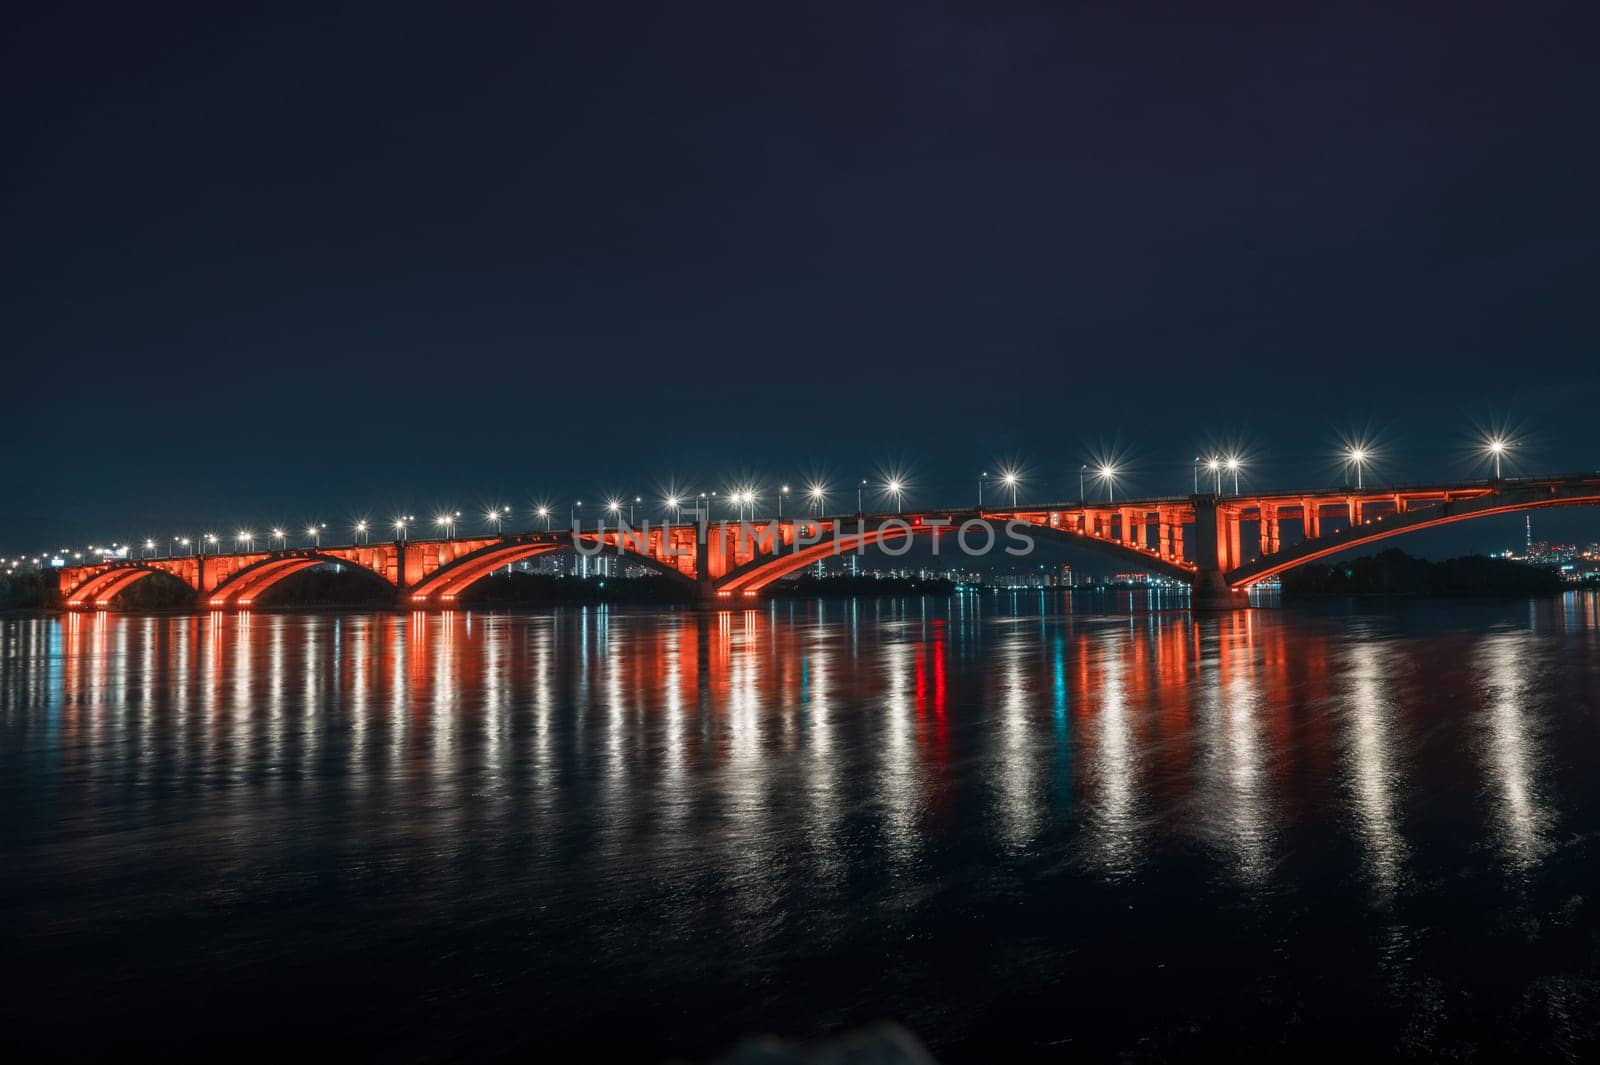 Communal bridge in Krasnoyarsk by rusak